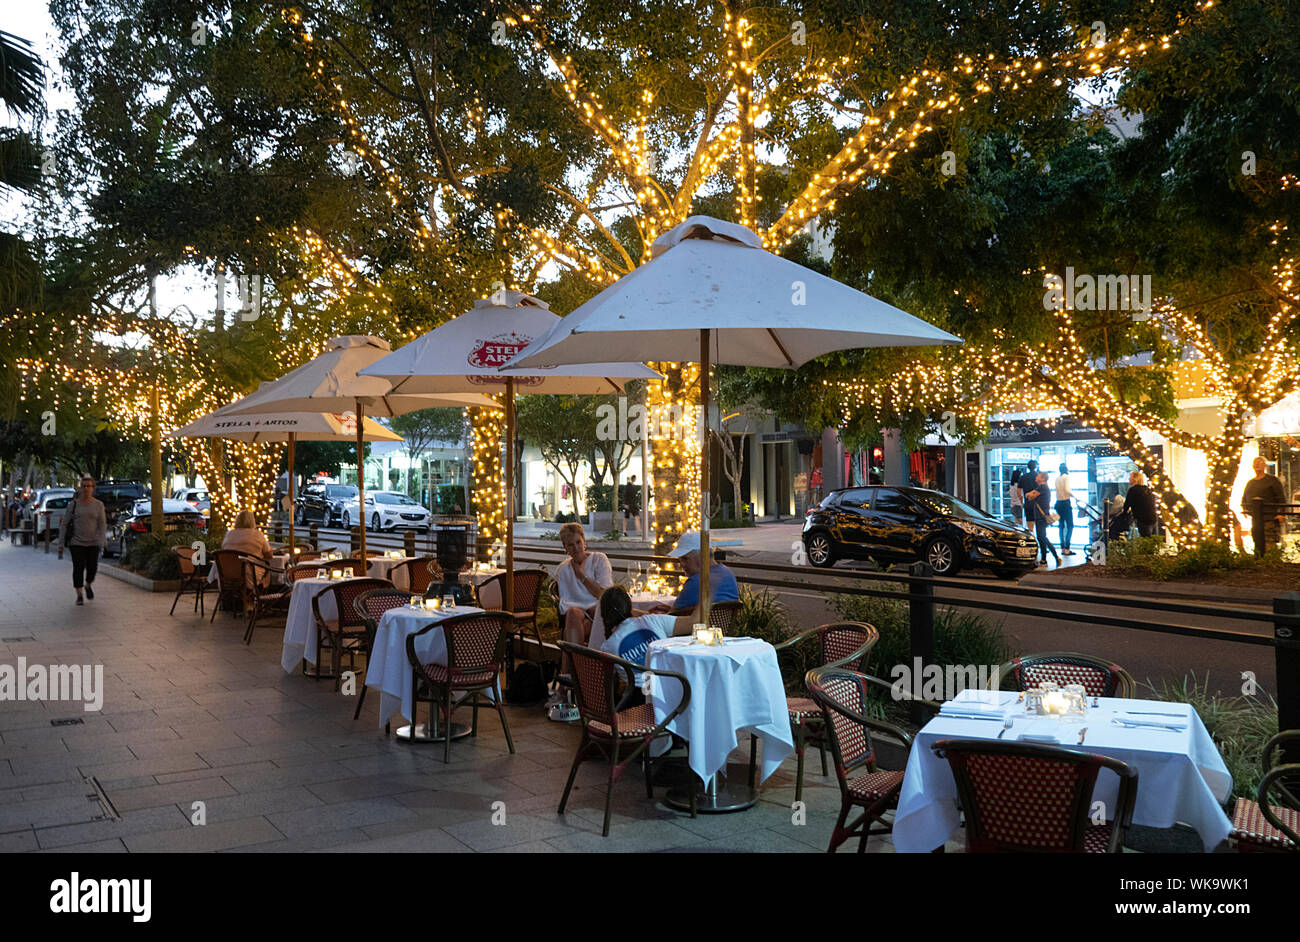 Im Freien Terrasse des Rokoko Restaurant mit Lichterketten in beliebten Hastings Street, Noosa Heads, Queensland, Queensland, Australien eingerichtet Stockfoto